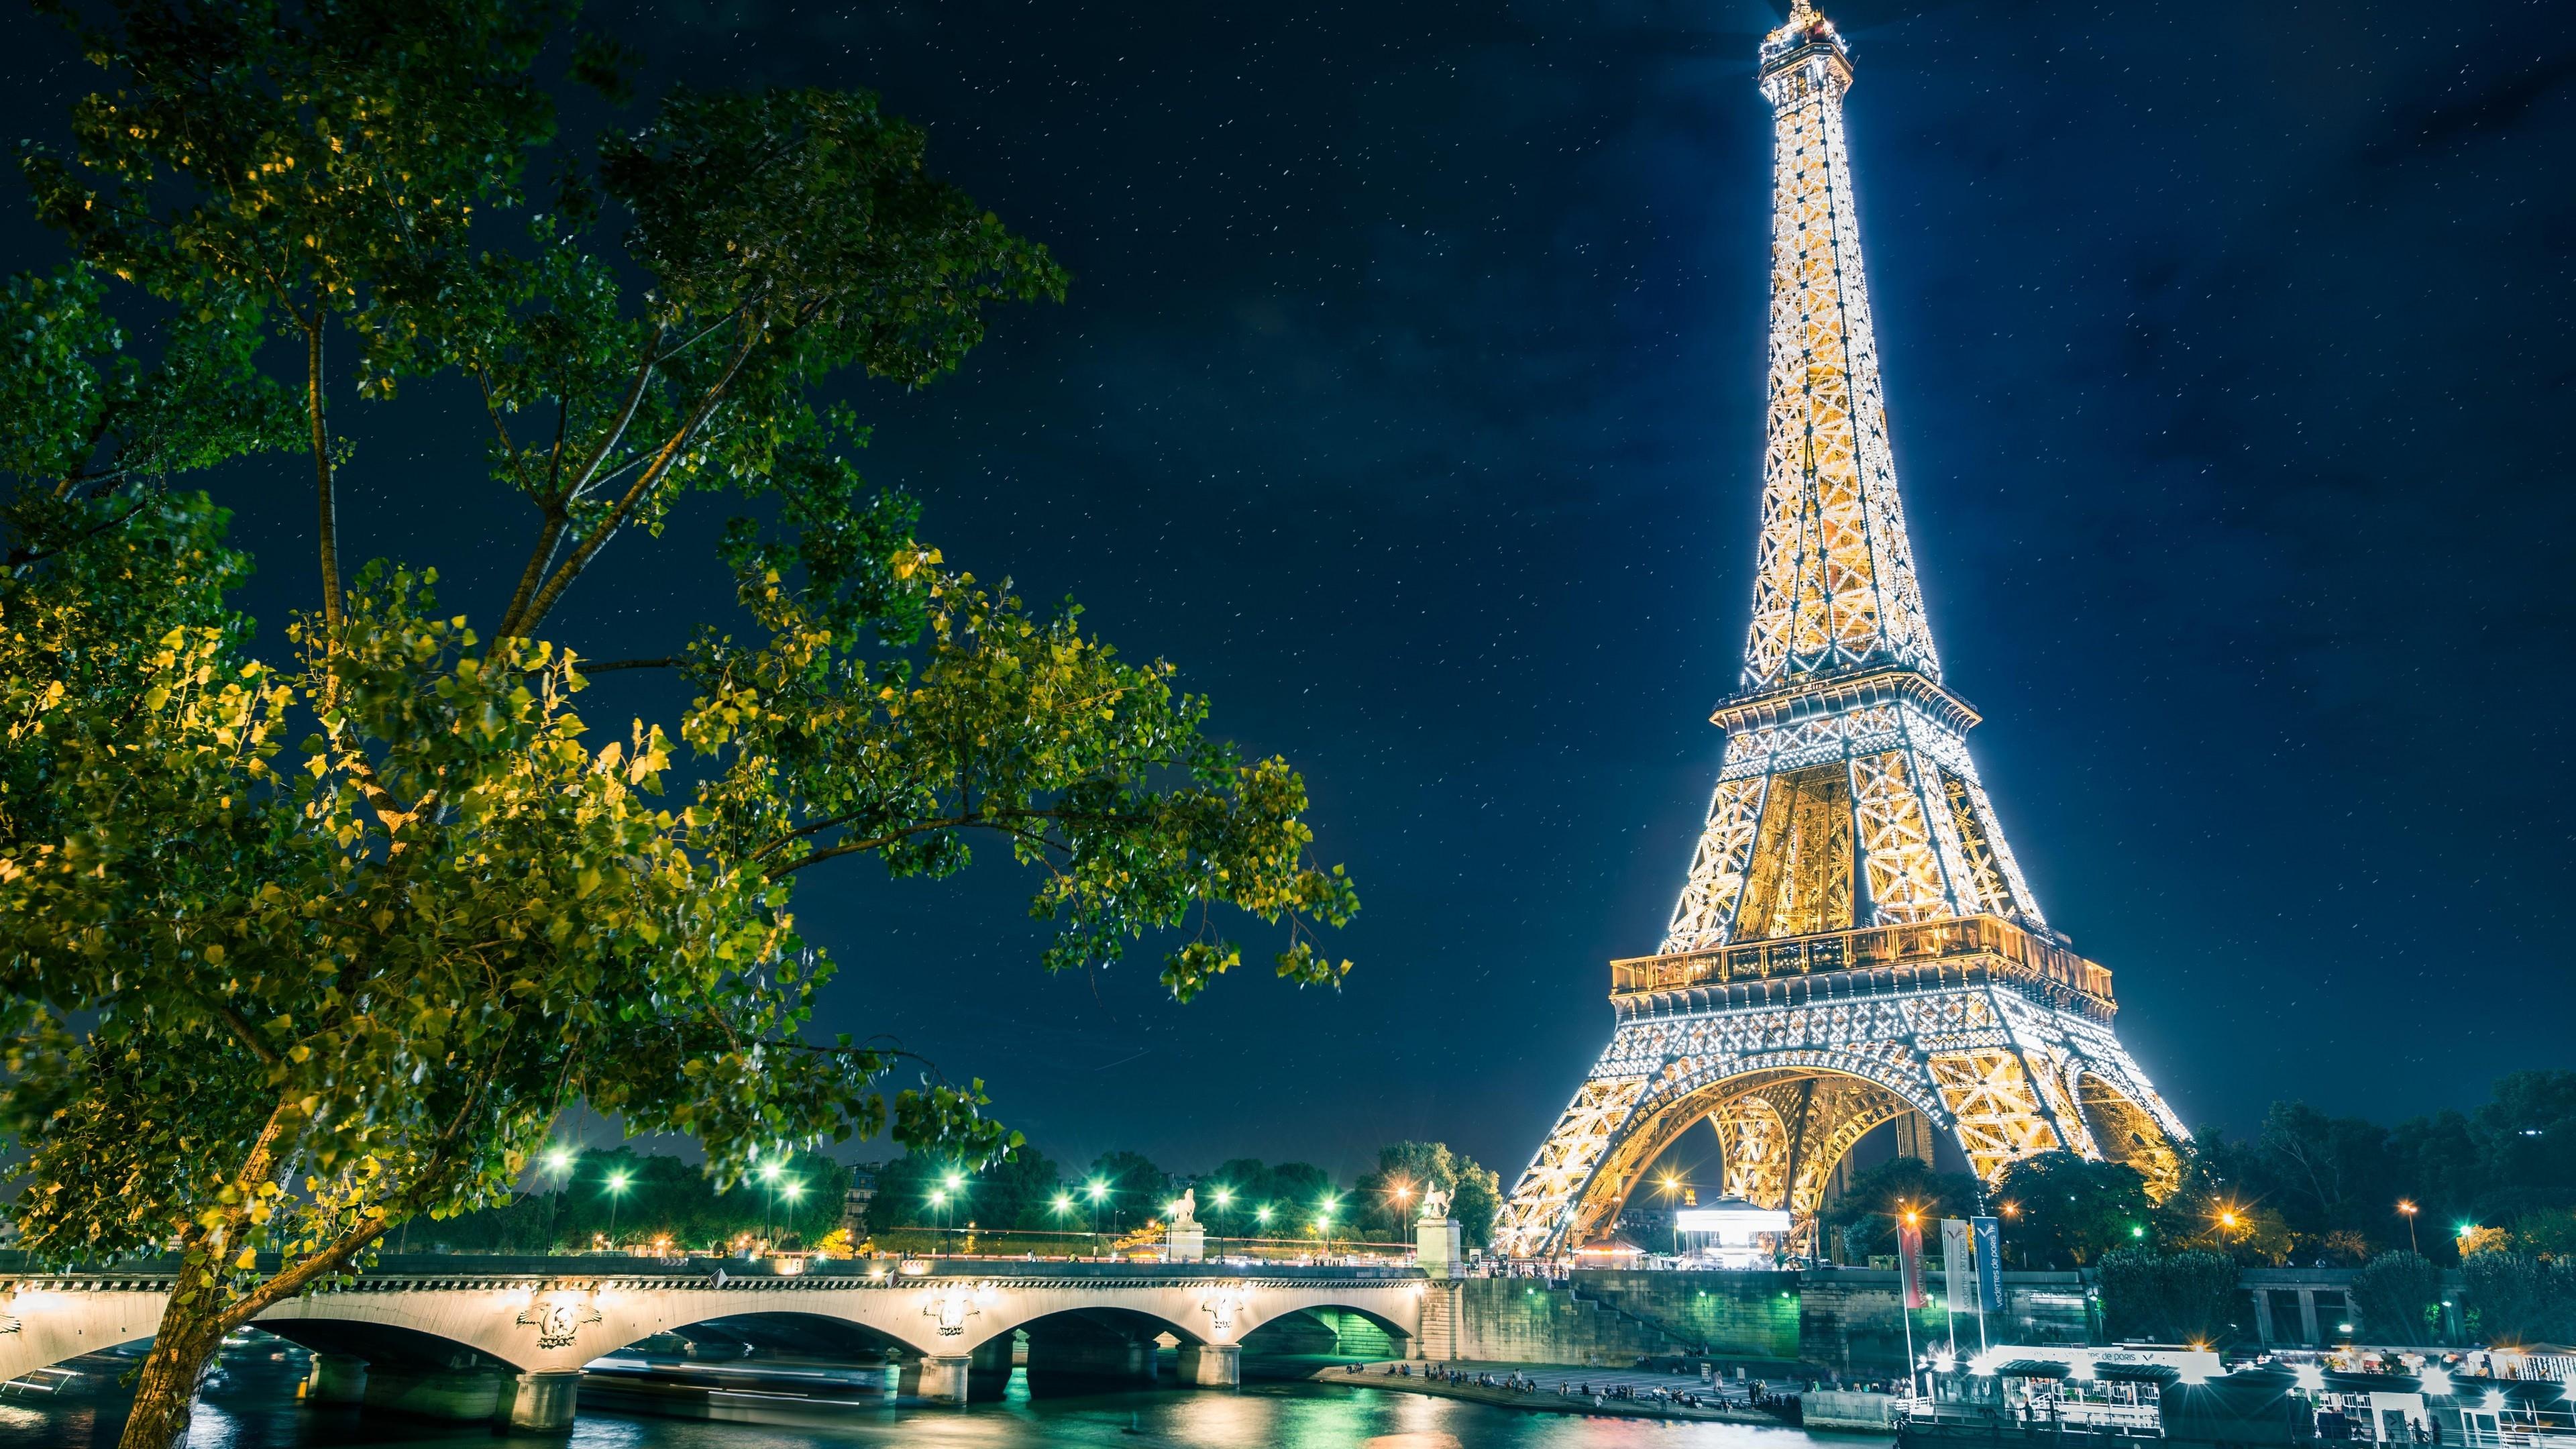 Eiffel Tower At Night - HD Wallpaper 